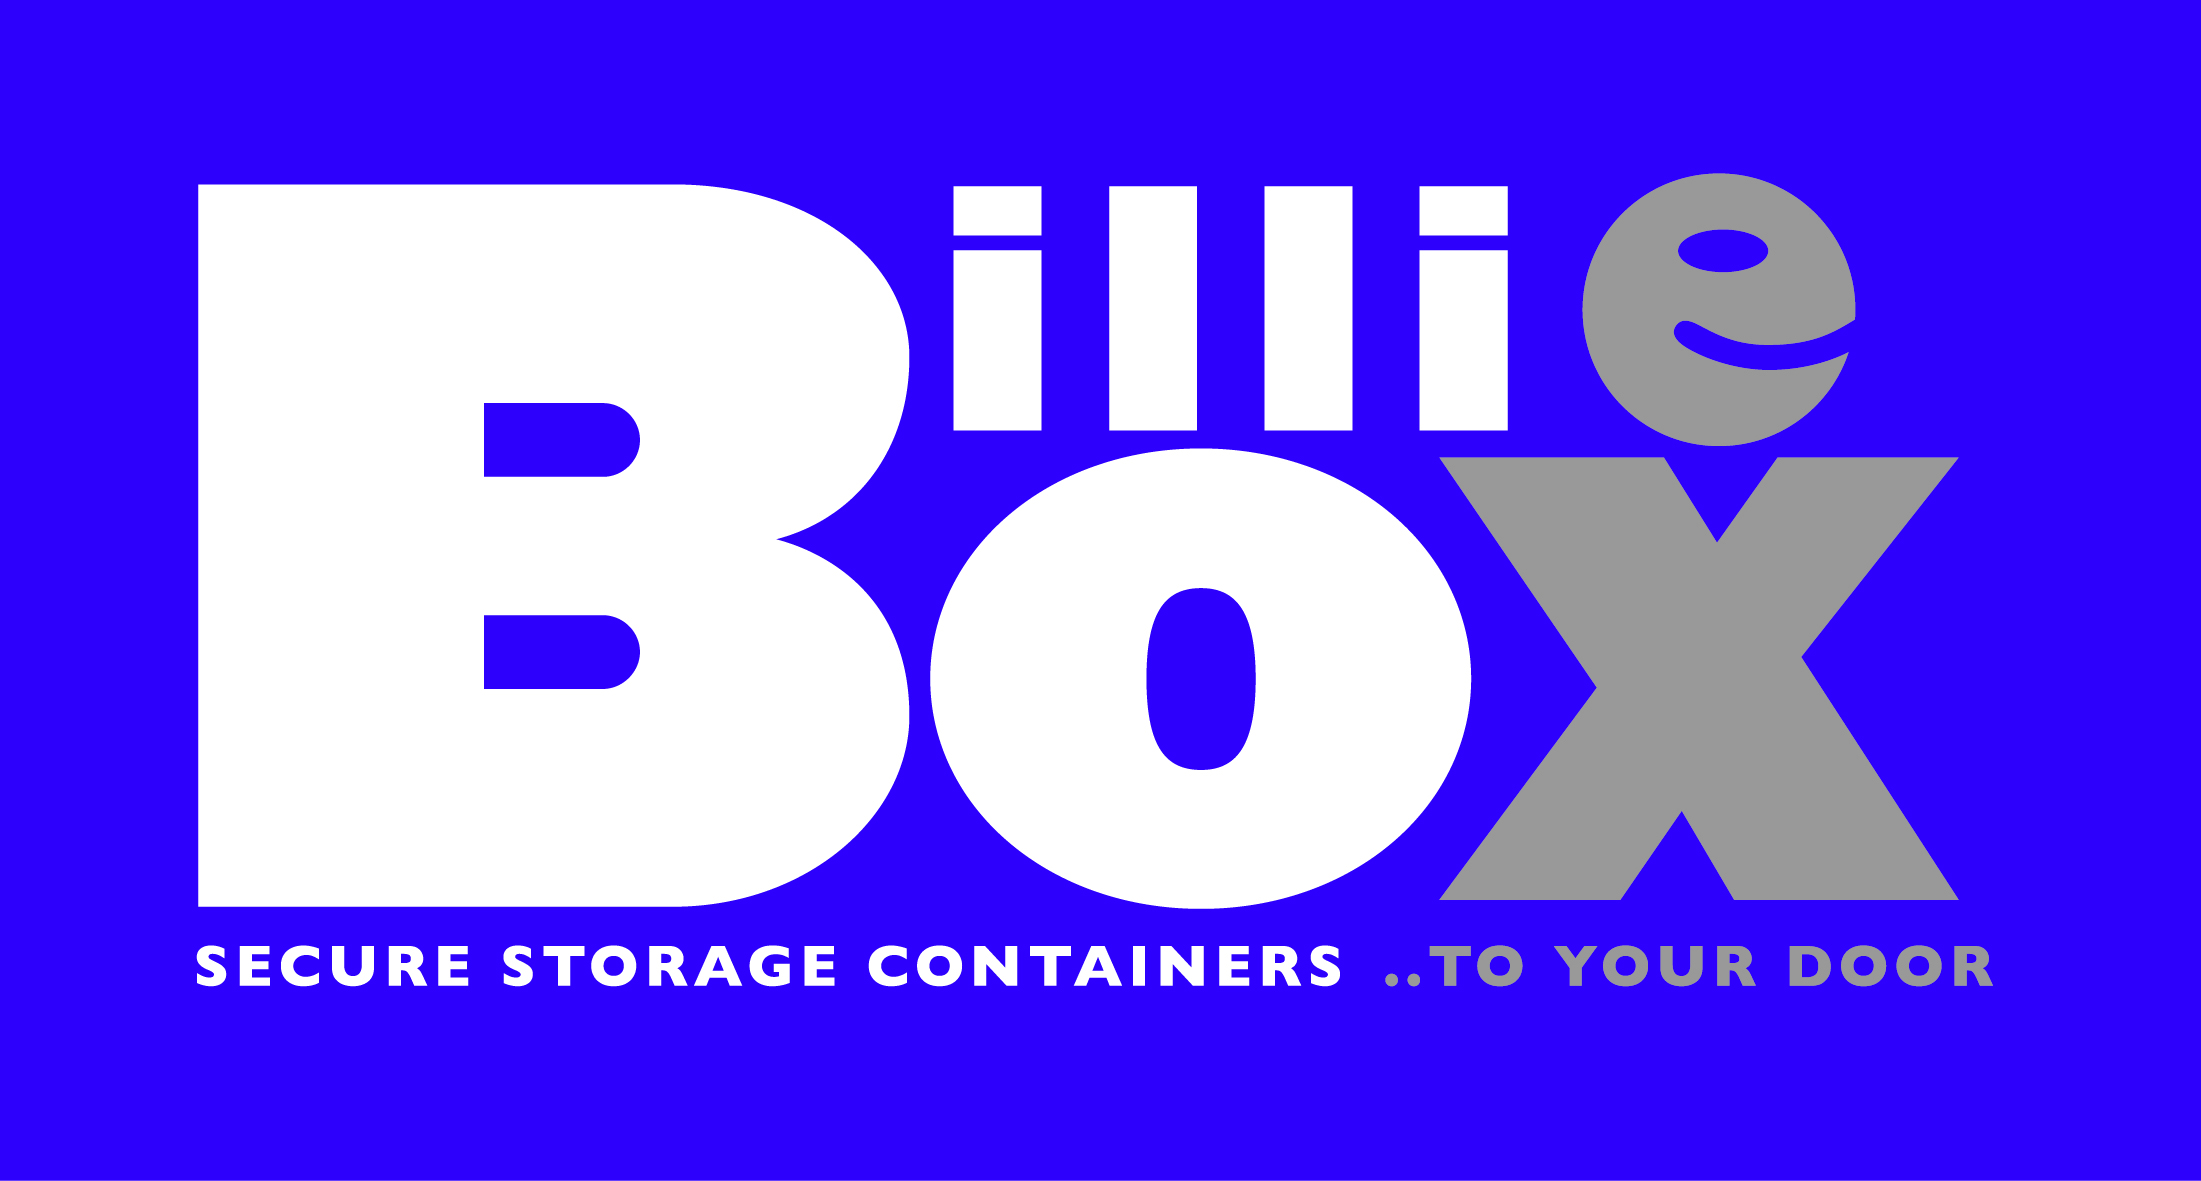 Billie box logo